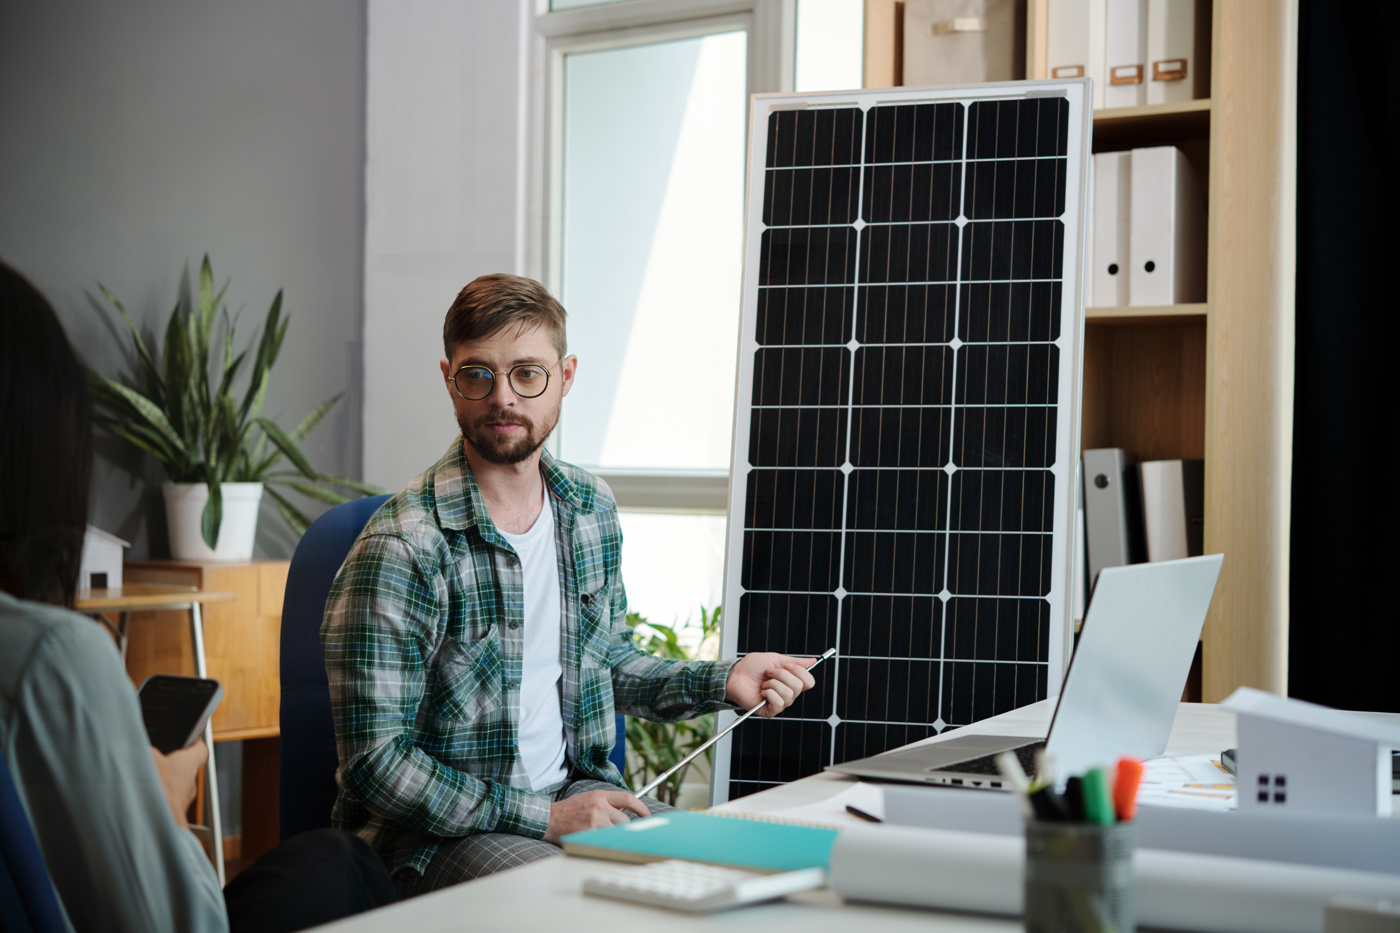 Un responsabile del progetto di installazione solare con certificato federale mostra a un potenziale cliente le possibilità per la sua casa.